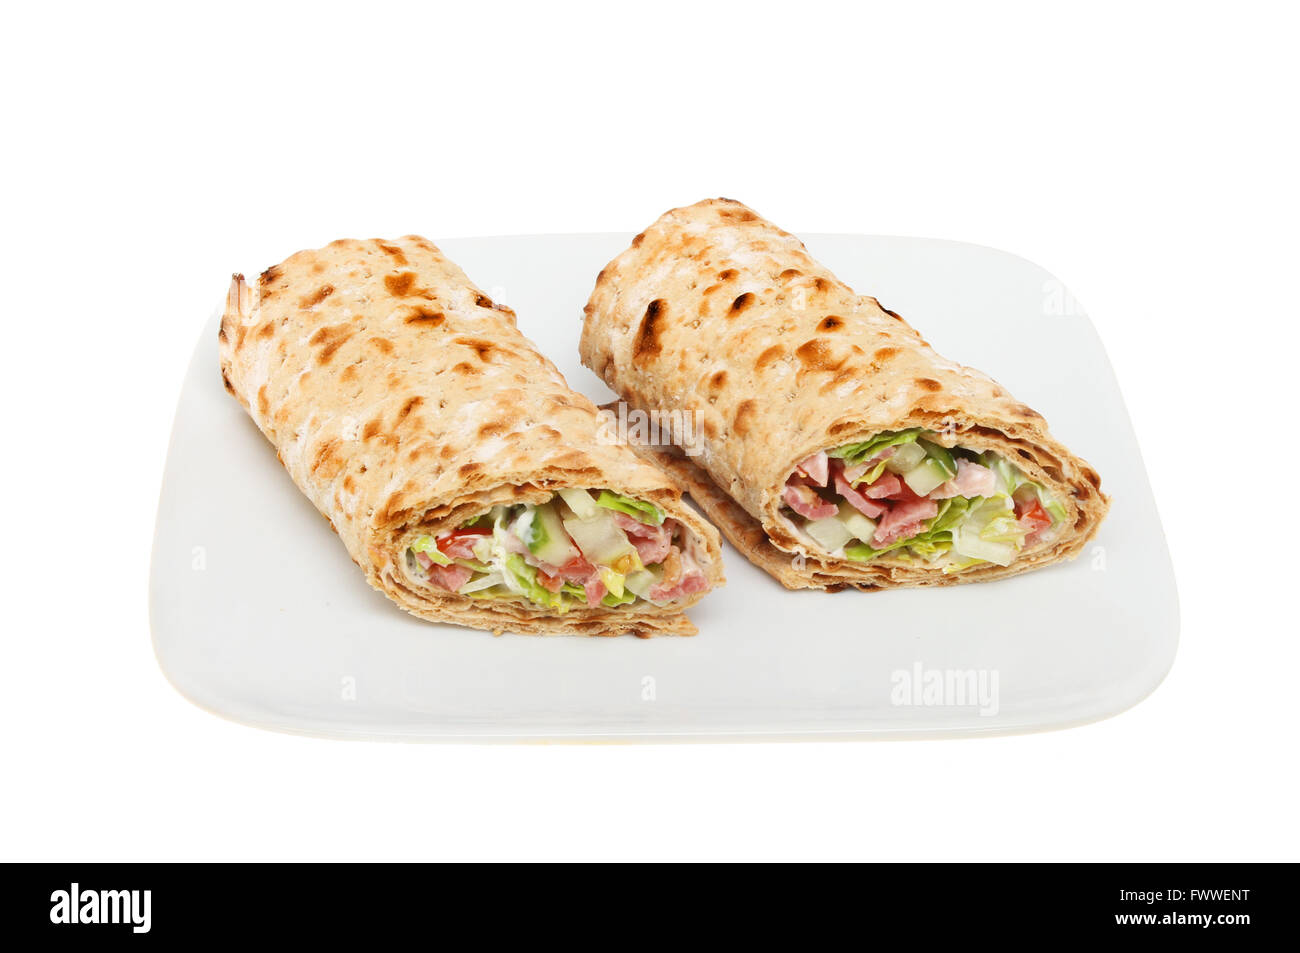 Zwei Speck, Salat und Tomate Brown Brot Sandwich umschließt auf einer Platte isoliert gegen weiß Stockfoto